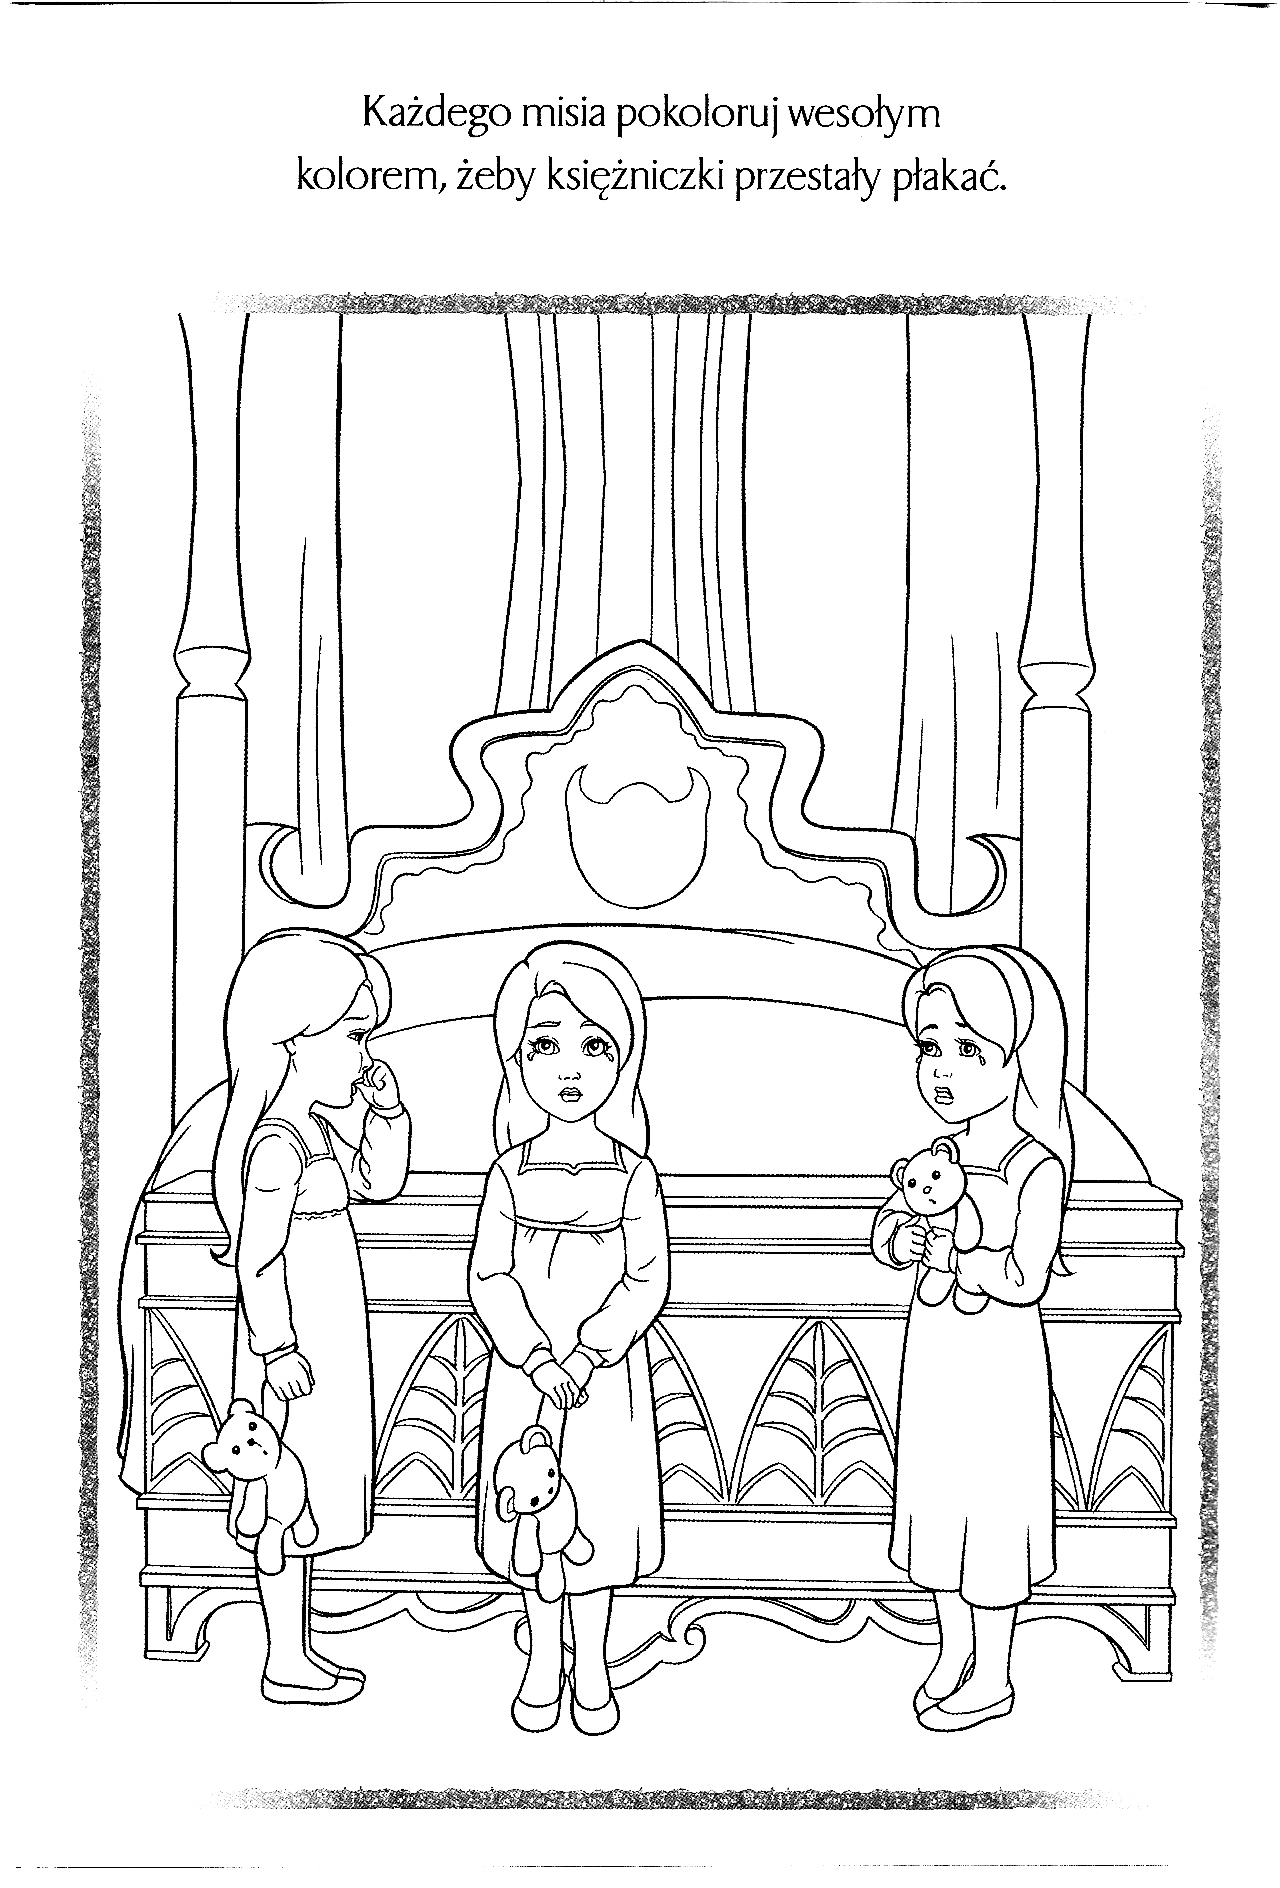 Kolorowanka księżniczka trzy małe księżniczki stoją przy pustym łożu królewskim i płaczą trzymając misie